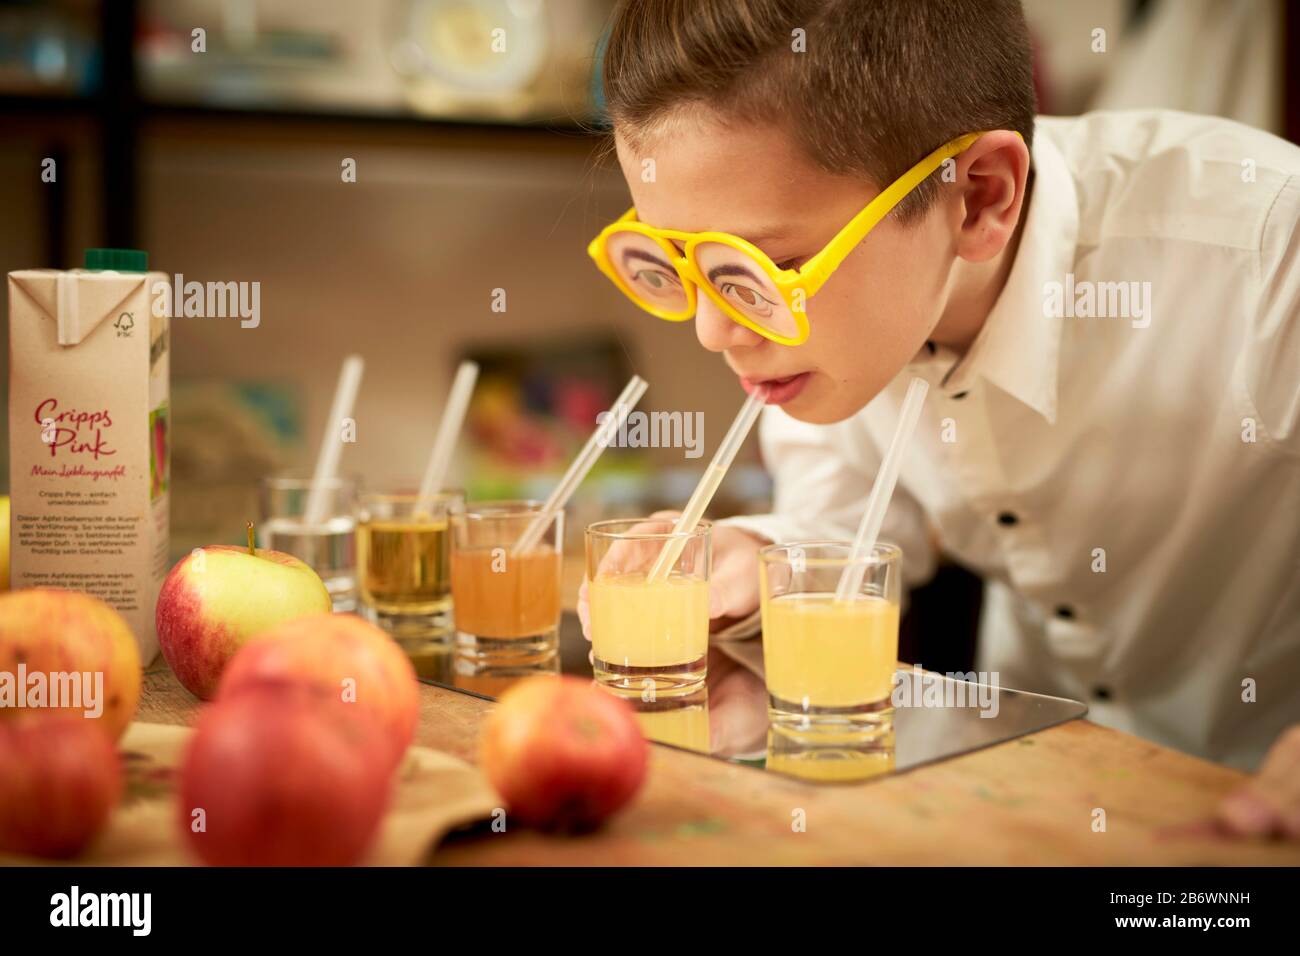 Enfants enquêtant sur la nourriture. Un garçon fait une dégustation aveugle de divers jus de fruits. Apprentissage selon le principe de la pédagogie Reggio, compréhension et découverte ludiques. Allemagne. Banque D'Images